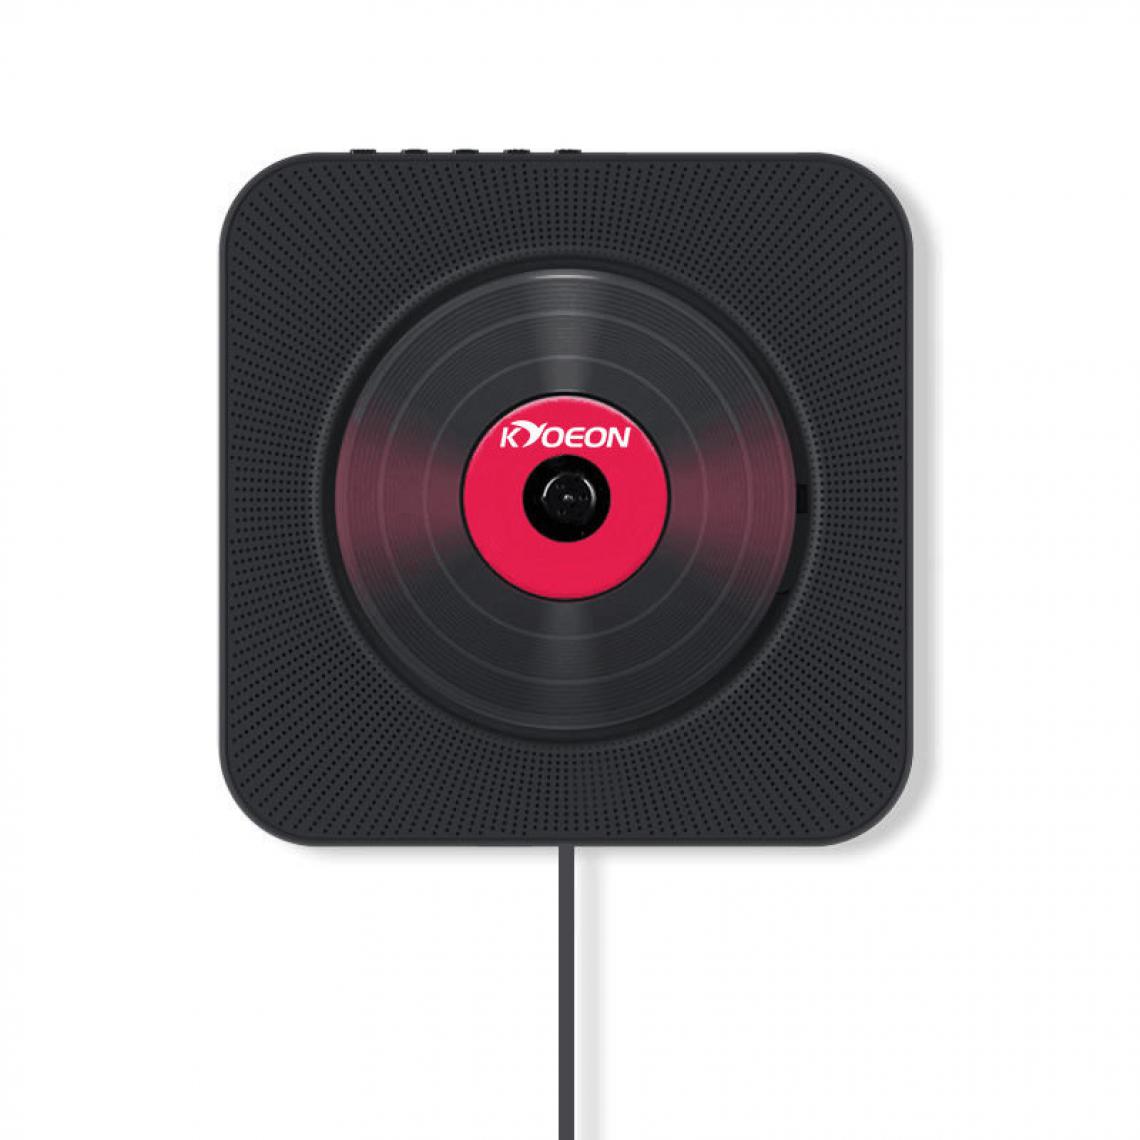 Chrono - Lecteur CD portable avec haut-parleur haute fidélité Bluetooth mural, haut-parleur audio domestique avec télécommande, radio FM USB-MP3 prise casque 3,6 mm, entrée/sortie AUX avec interrupteur à tirette(Noir) - Enceintes Hifi